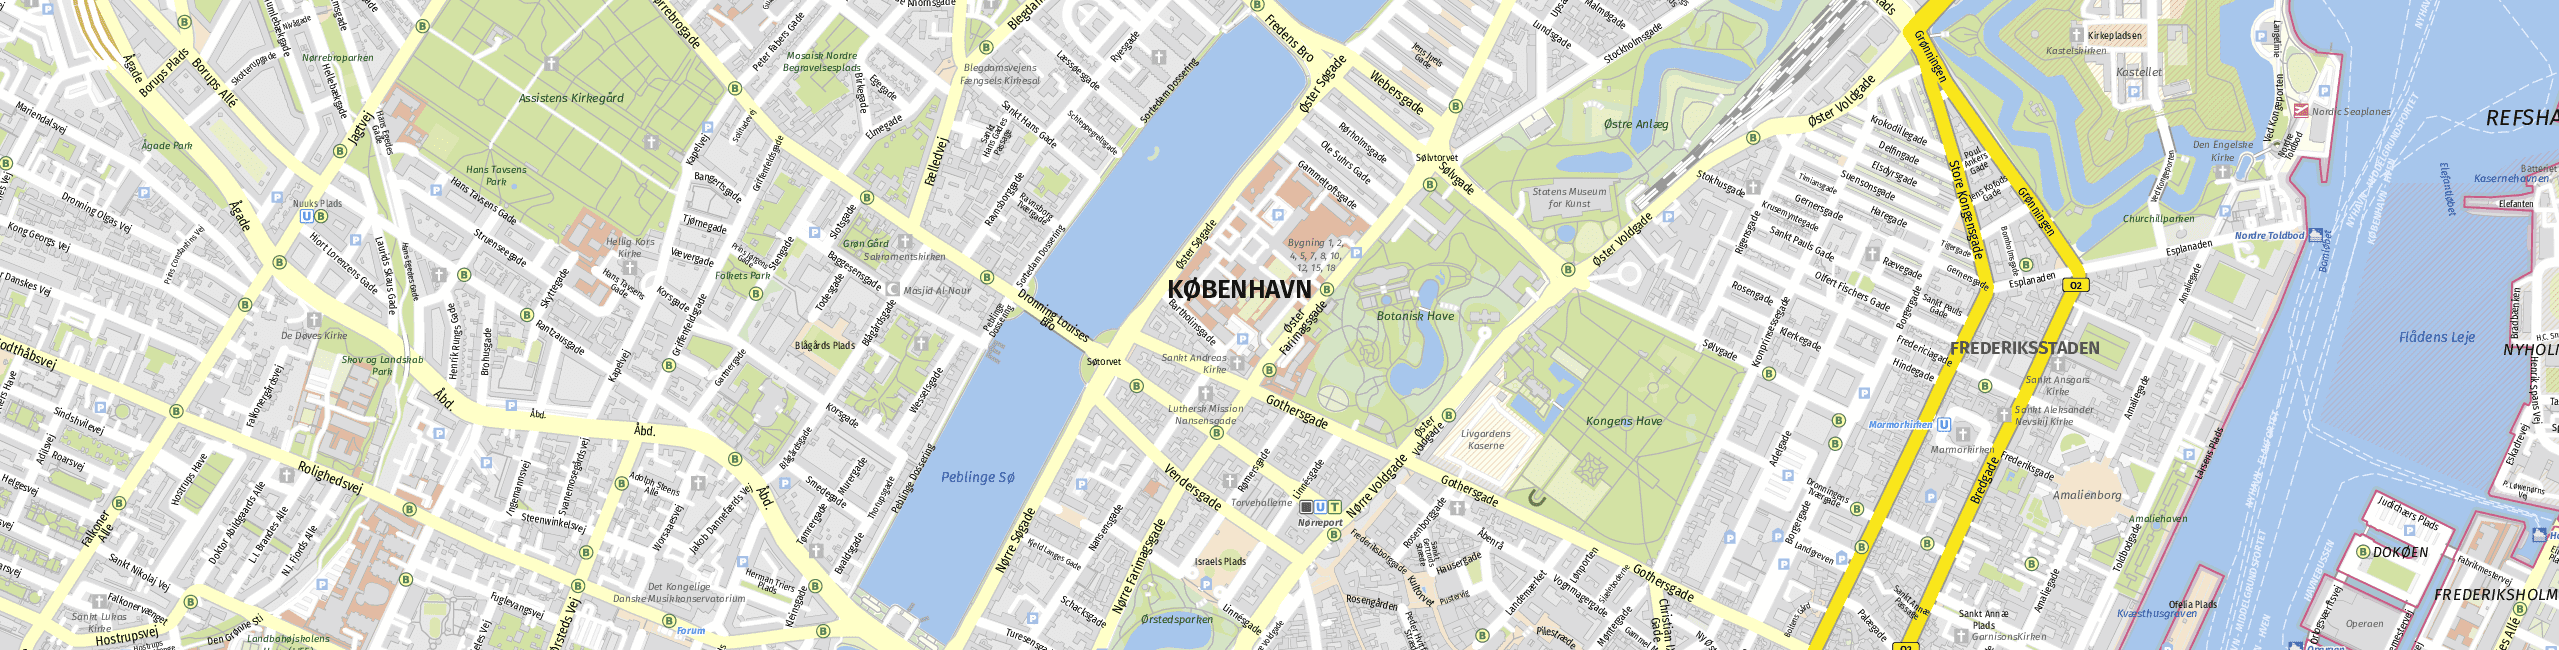 Stadtplan Kopenhagen zum Downloaden.